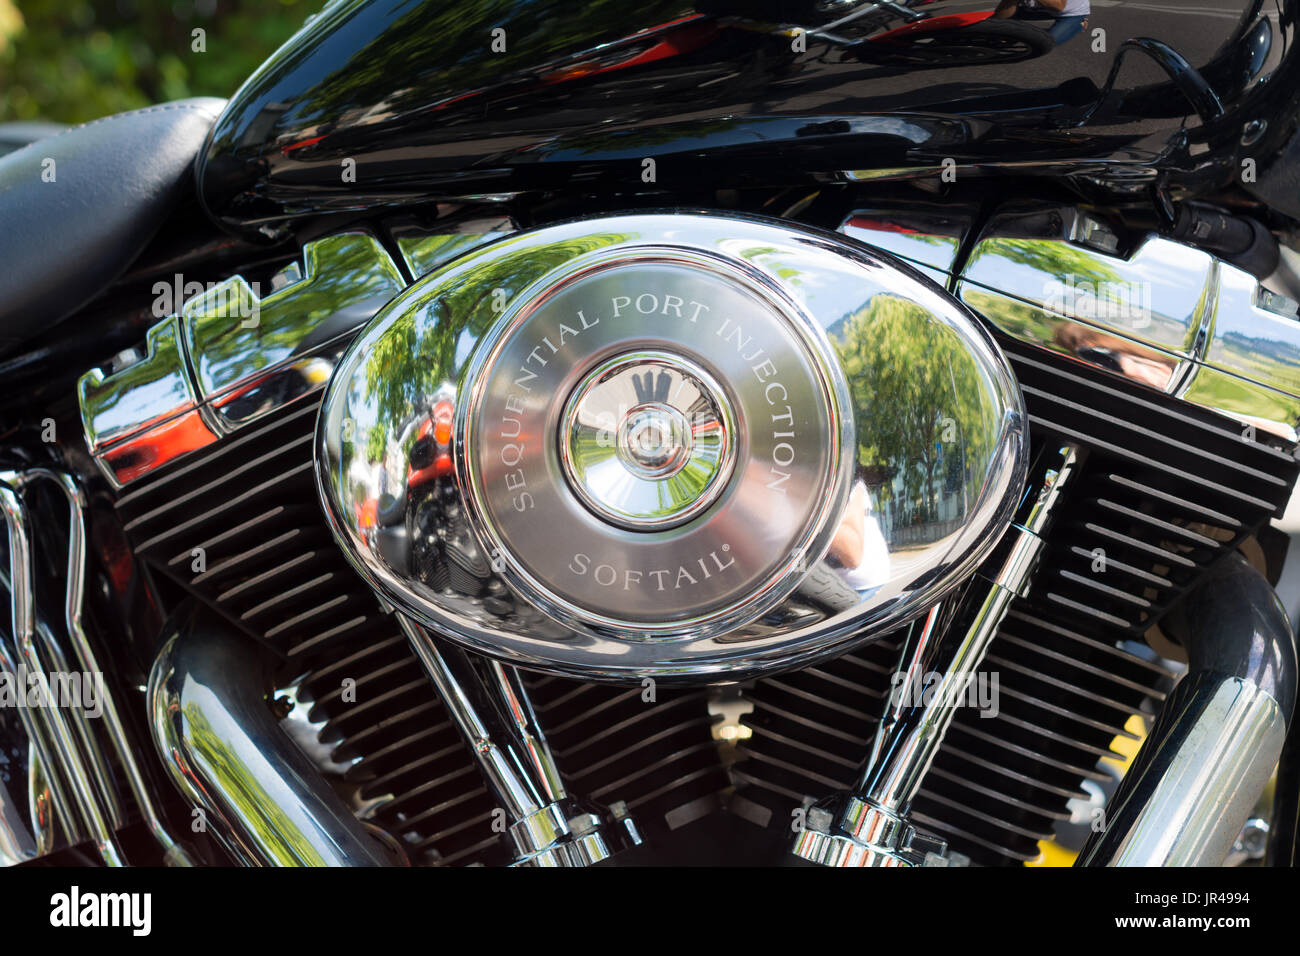 Mostra motociclette americane classiche. Dettagli delle parti del motociclo. Effetto filtro vintage Foto Stock